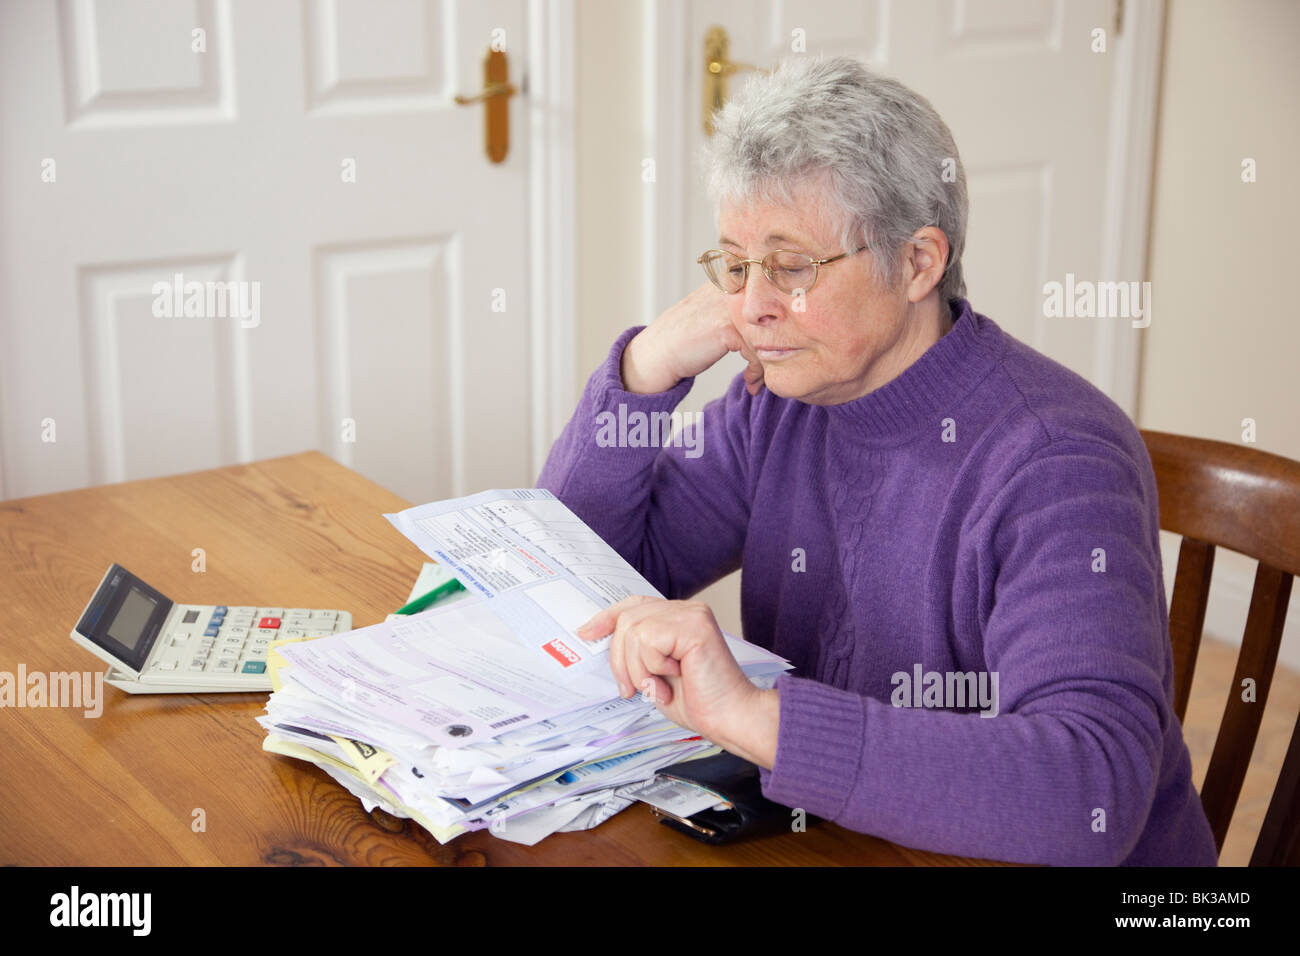 Personnes âgées senior woman pensionné DAO dame retraité ayant un gros tas de projets sur la table à la recherche appuyée au sein d'une grande facture de carburant gaz. Royaume-uni Grande-Bretagne Banque D'Images